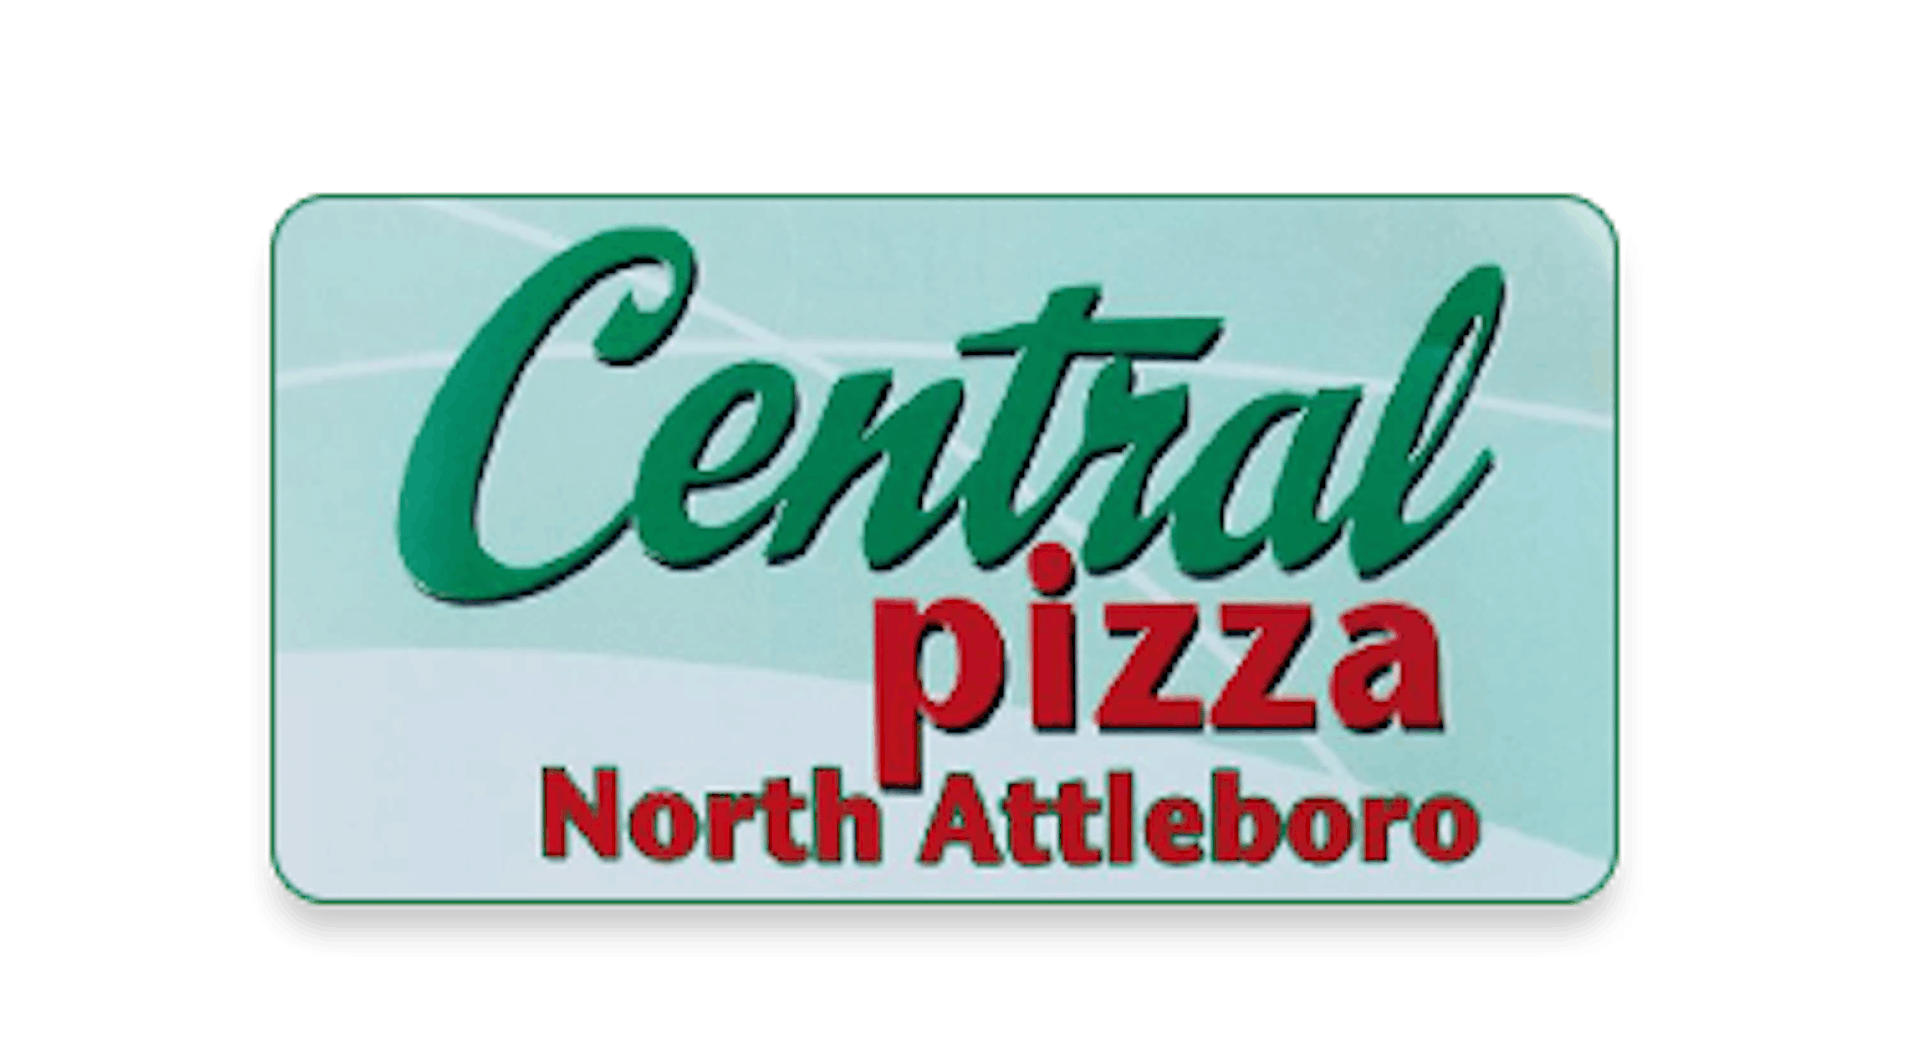 Central Pizza North Attleboro Ma 02760 Menu Order Online